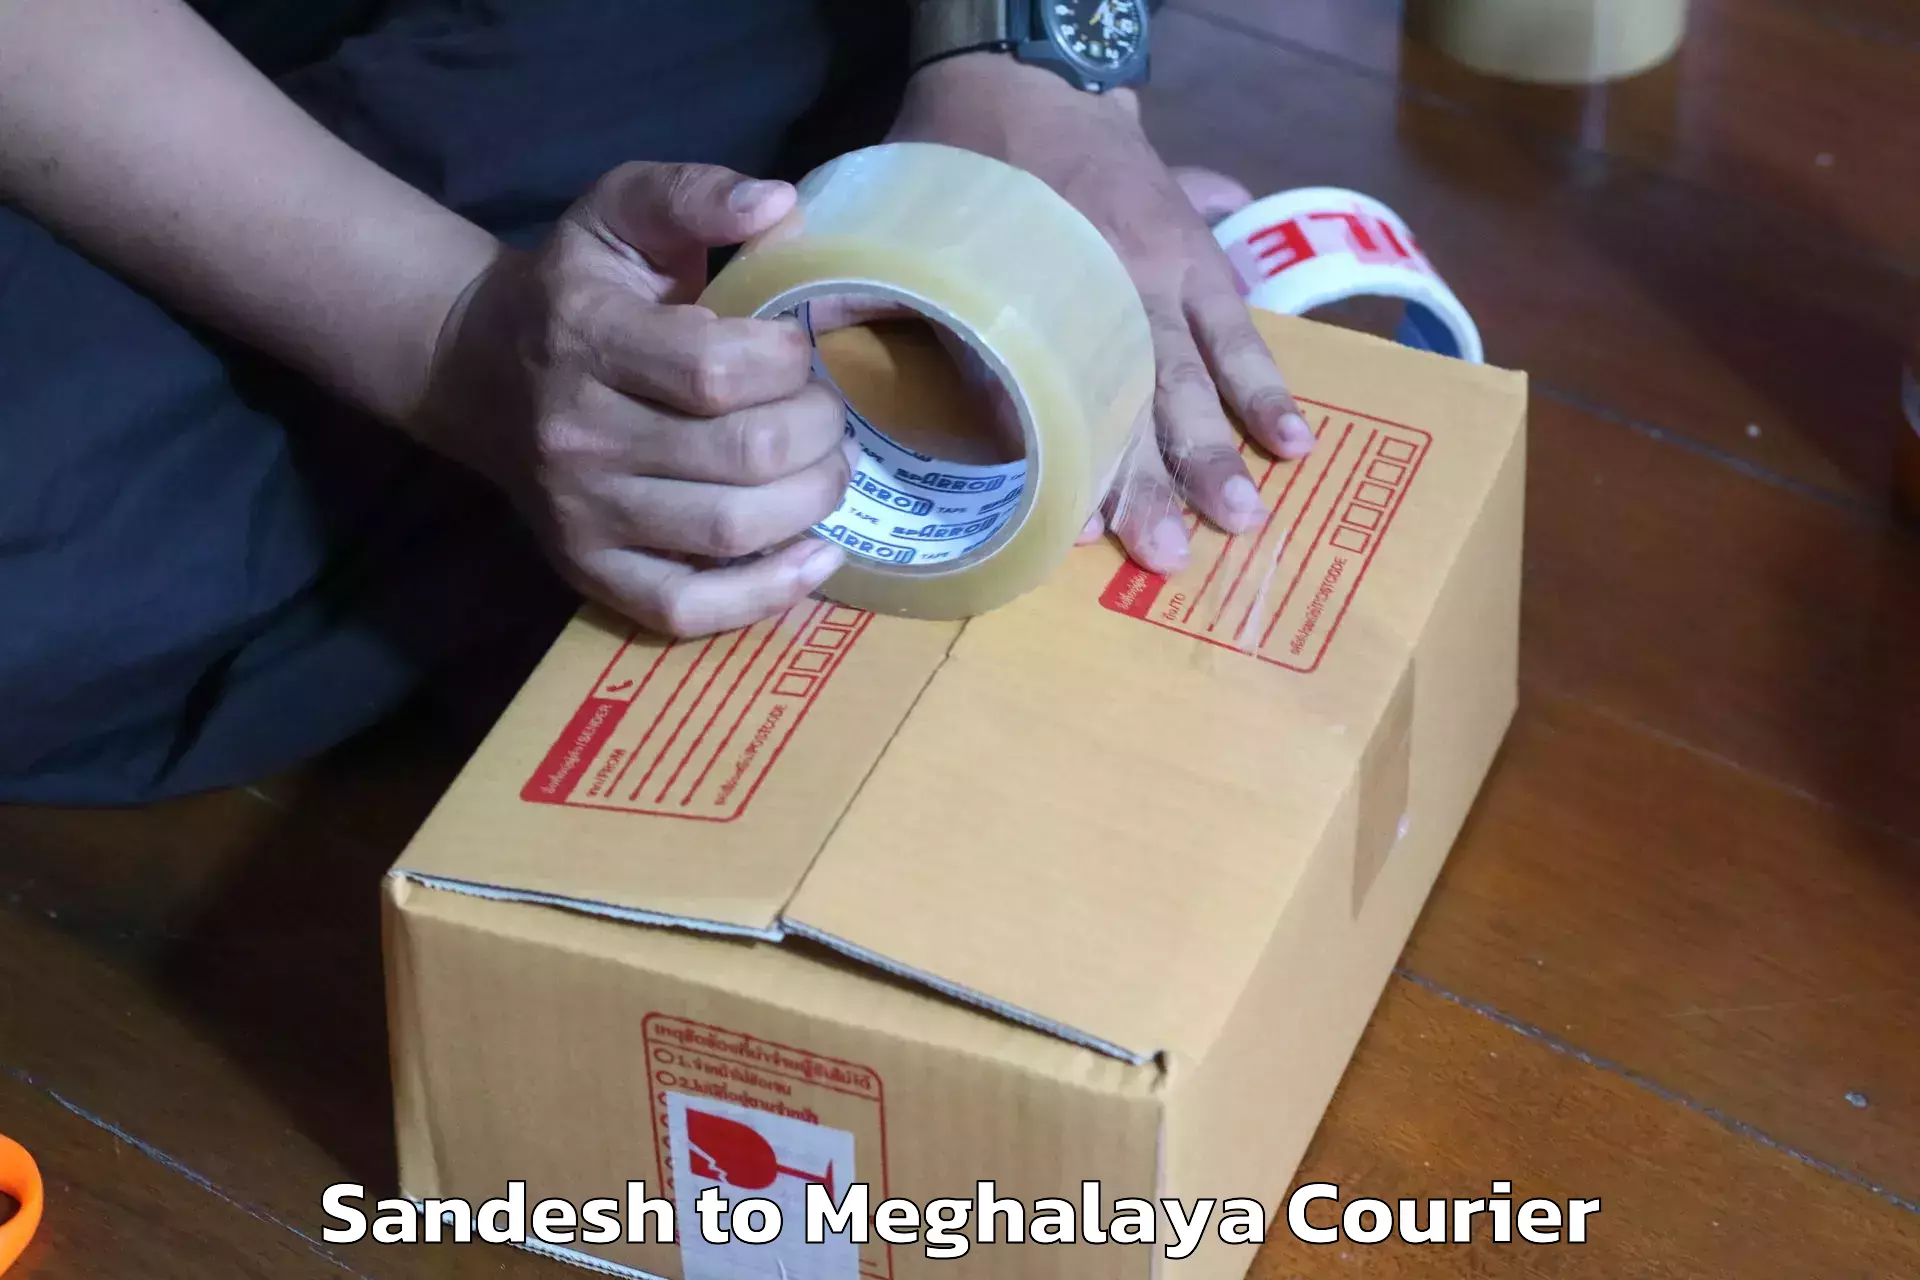 Furniture transport experts Sandesh to Meghalaya